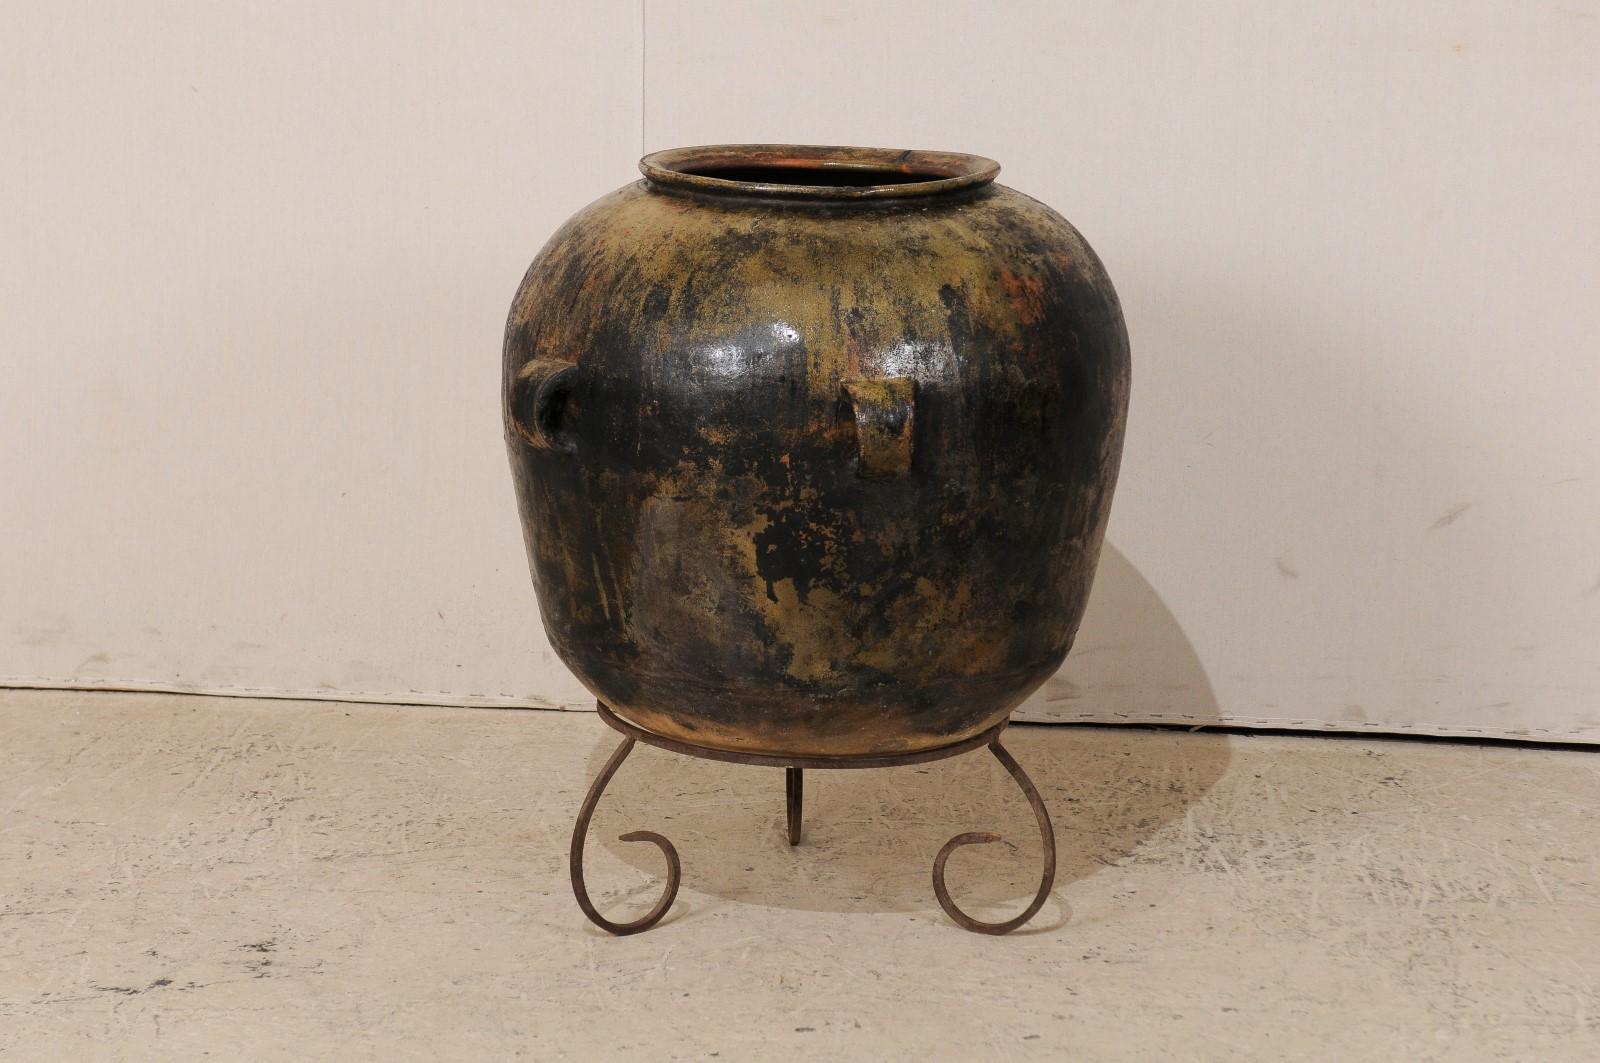 Ein guatemaltekischer Keramikkrug auf einem Ständer. Dieser guatemaltekische Krug aus dem frühen 20. Jahrhundert hat einen breiten Korpus, vier Henkel und eine schöne Patina mit satten, warmen Farbtönen. Der Krug steht auf einem eigens angefertigten